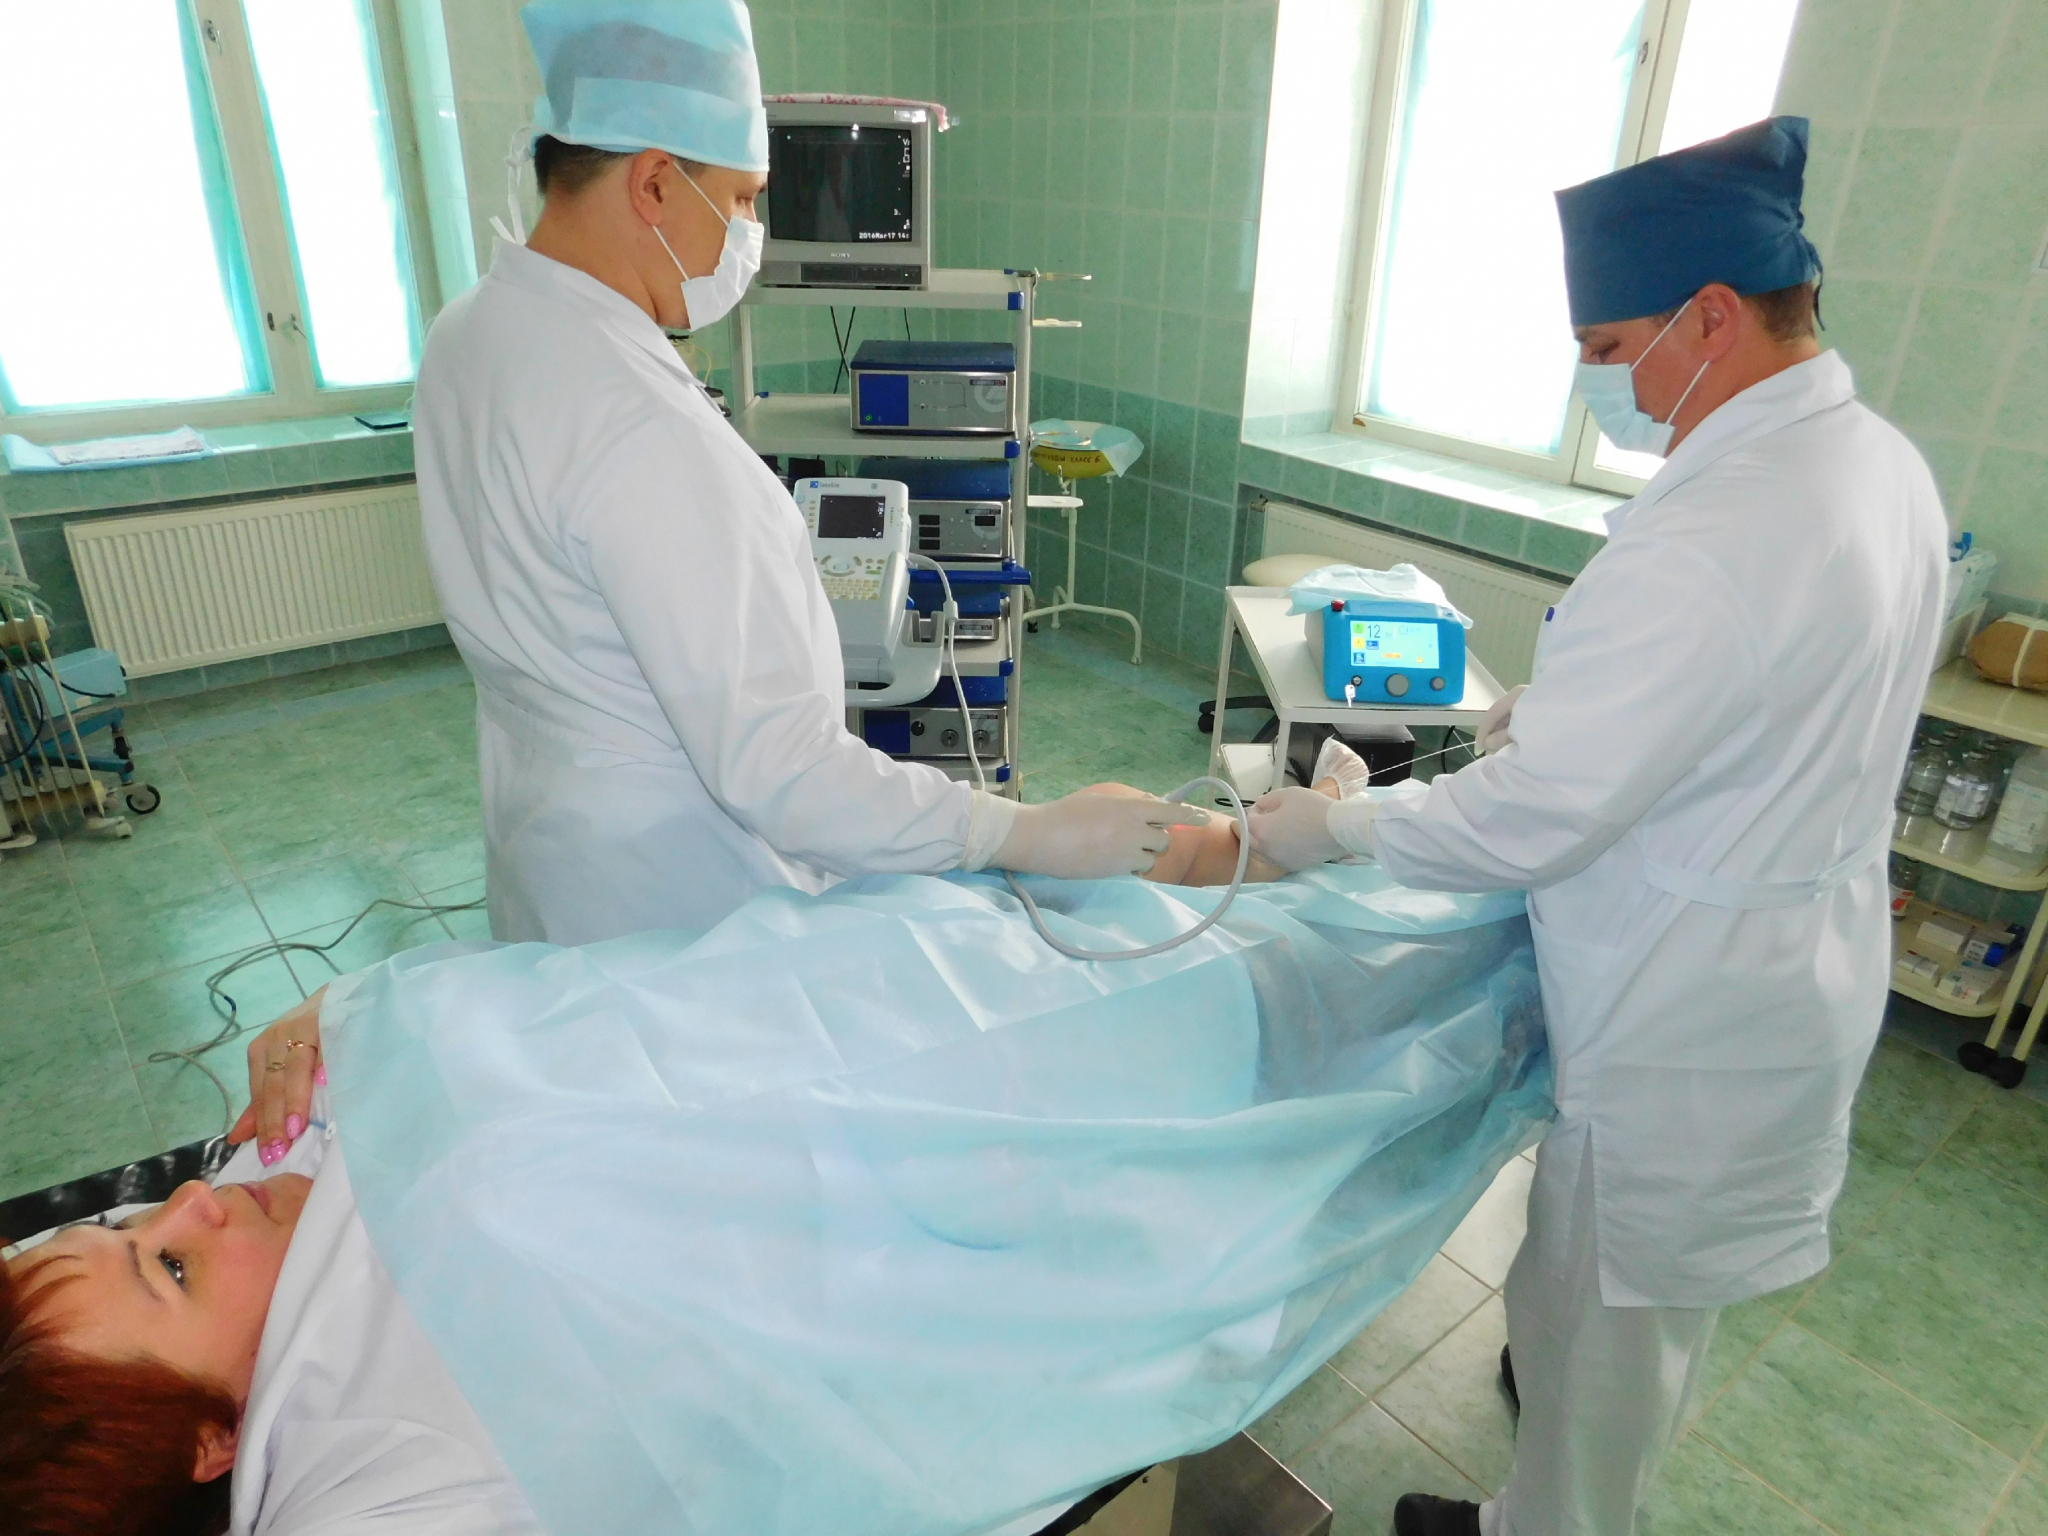 В больницу какого малого города Чувашии требуется больше всего врачей